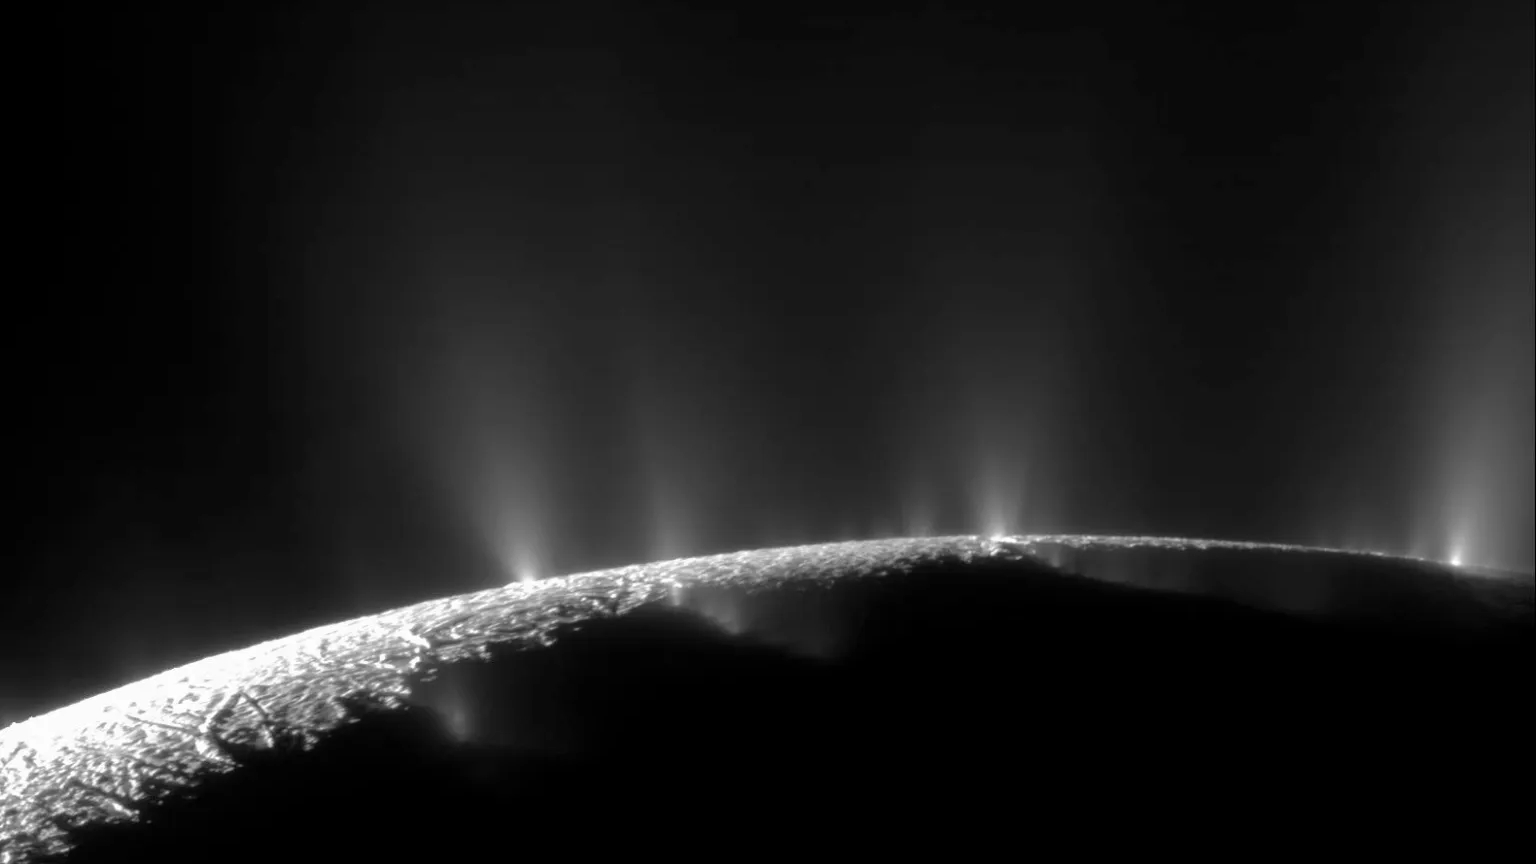 Plumas dramáticas, grandes e pequenas, borrifam água gelada e vapor de muitos locais ao longo das famosas “listras de tigre” perto do pólo sul da lua de Saturno, Encélado. As “listras de tigre” são quatro fraturas proeminentes, com aproximadamente 135 quilômetros de comprimento, que cruzam o terreno polar sul da lua. Este mosaico de duas imagens é uma dos registros de maior resolução obtidos pela sonda Cassini, durante o seu levantamento de imagens da bacia de gêiseres que cobre o hemisfério sul da lua de Saturno, Encélado